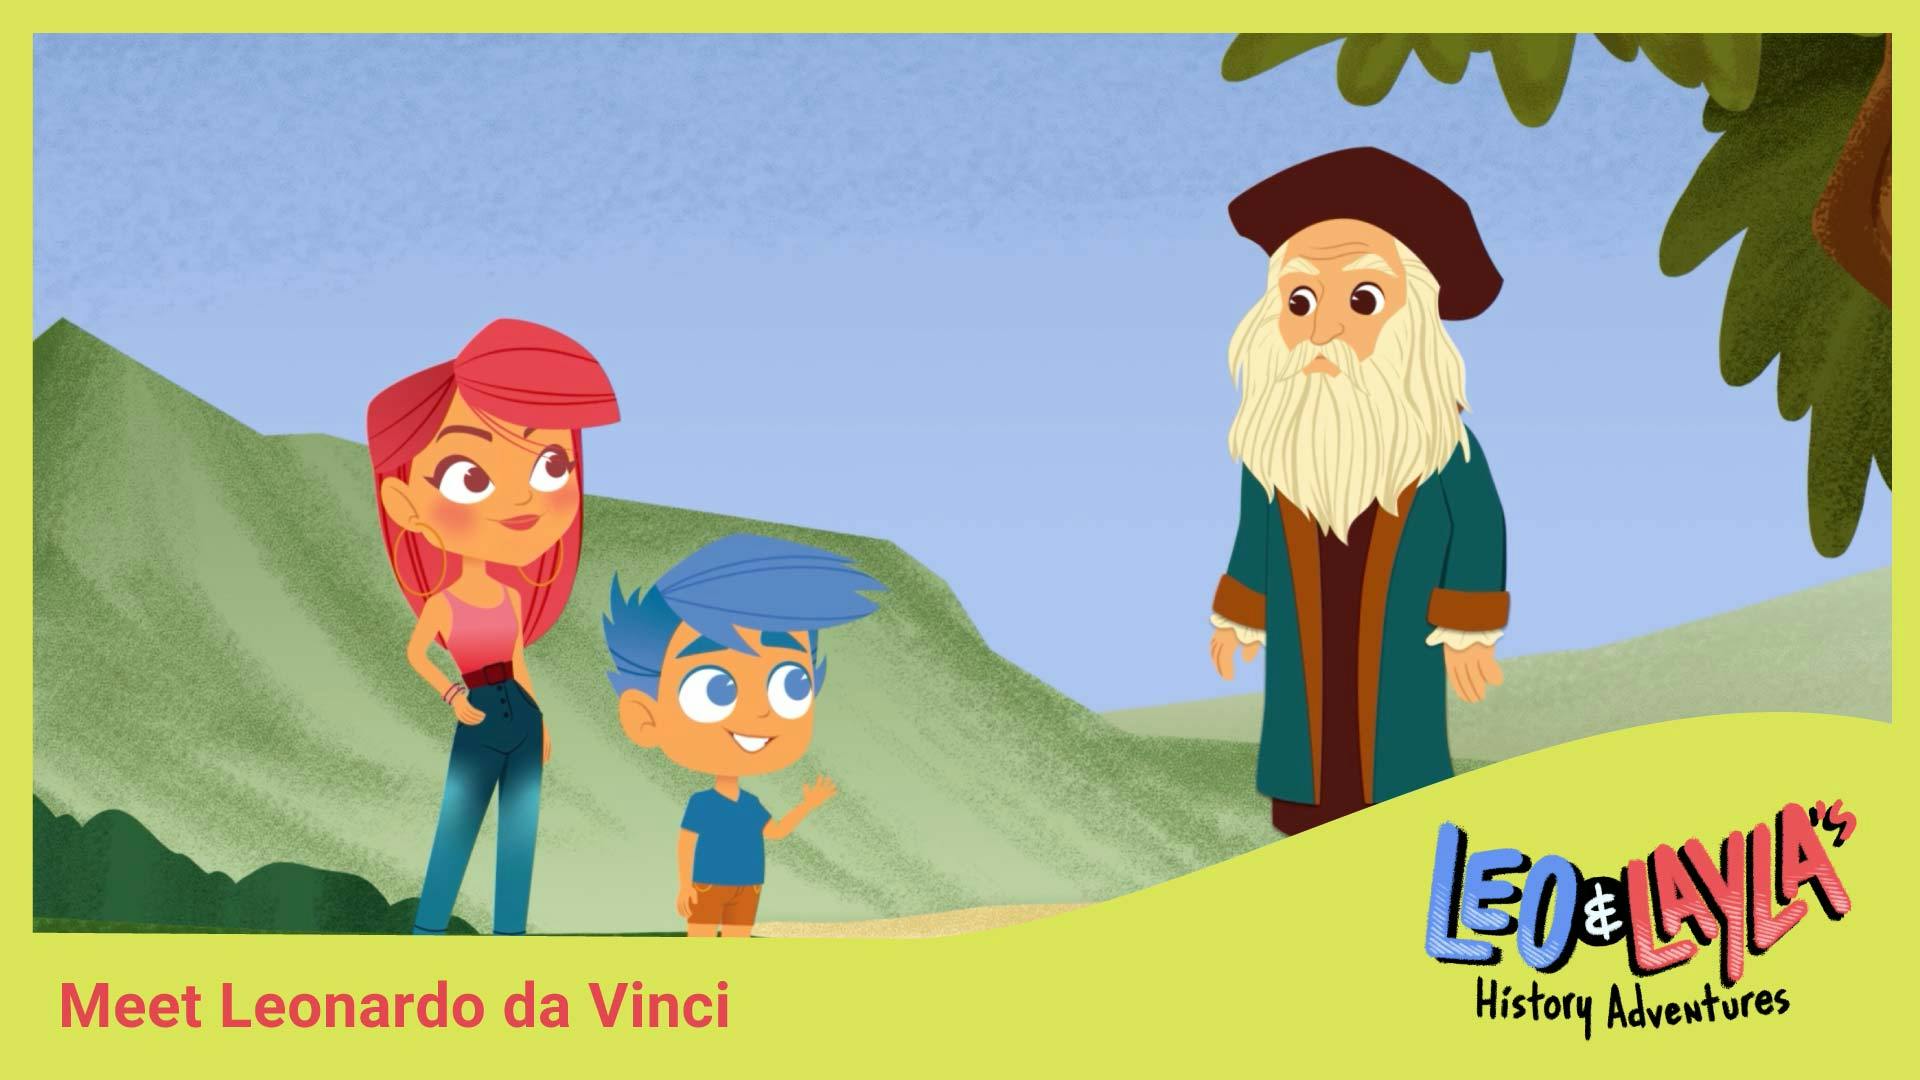 Leonardo da Vinci: Visionary Artist and Inventor